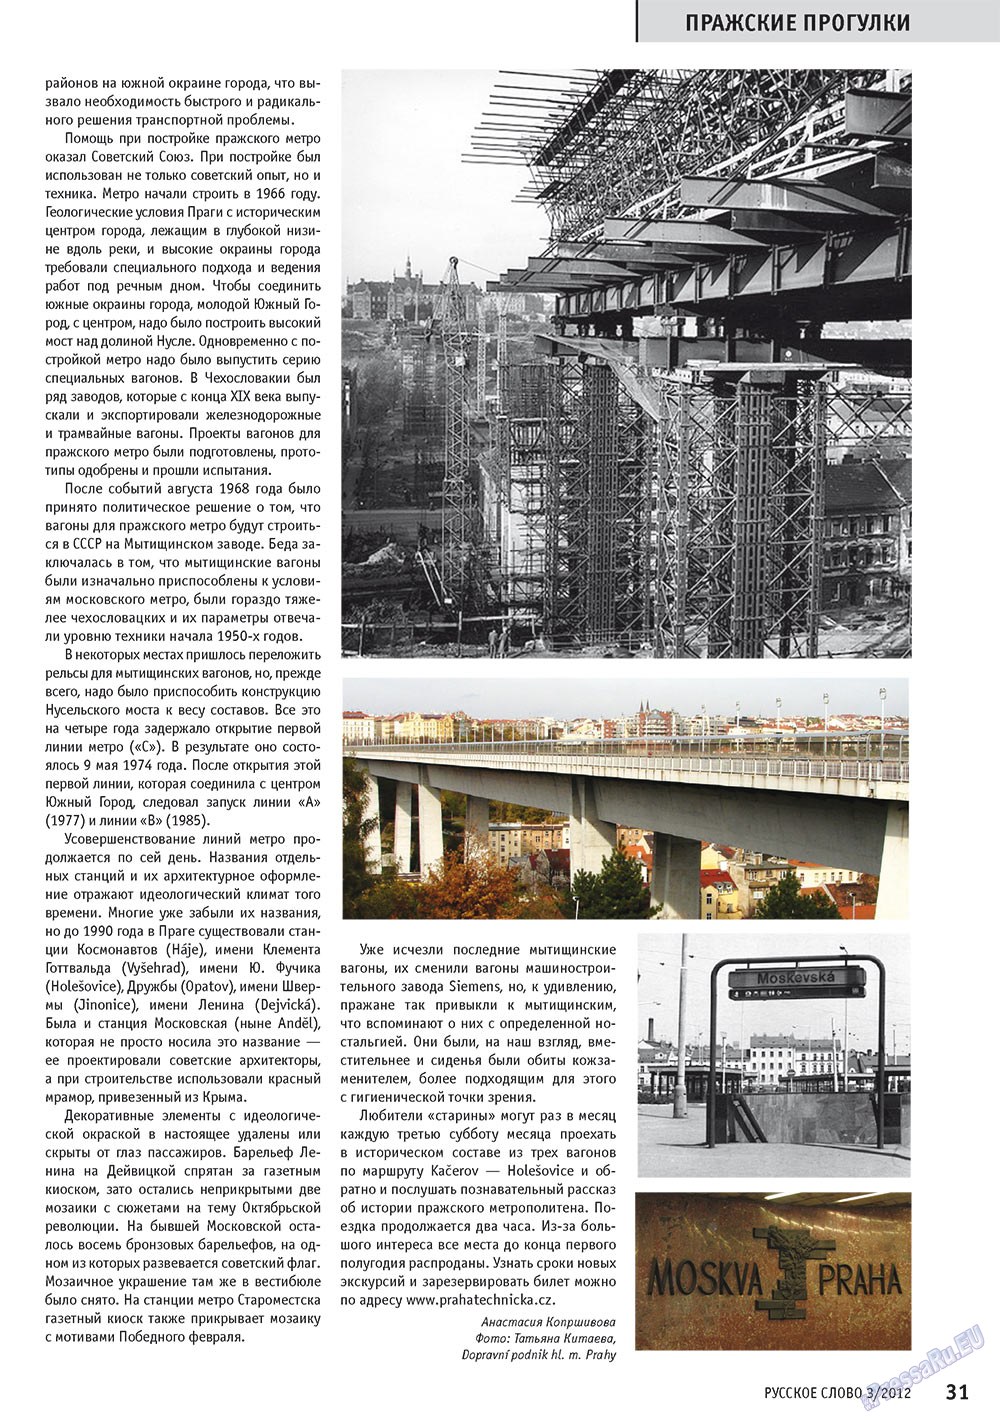 Русское слово, журнал. 2012 №3 стр.32